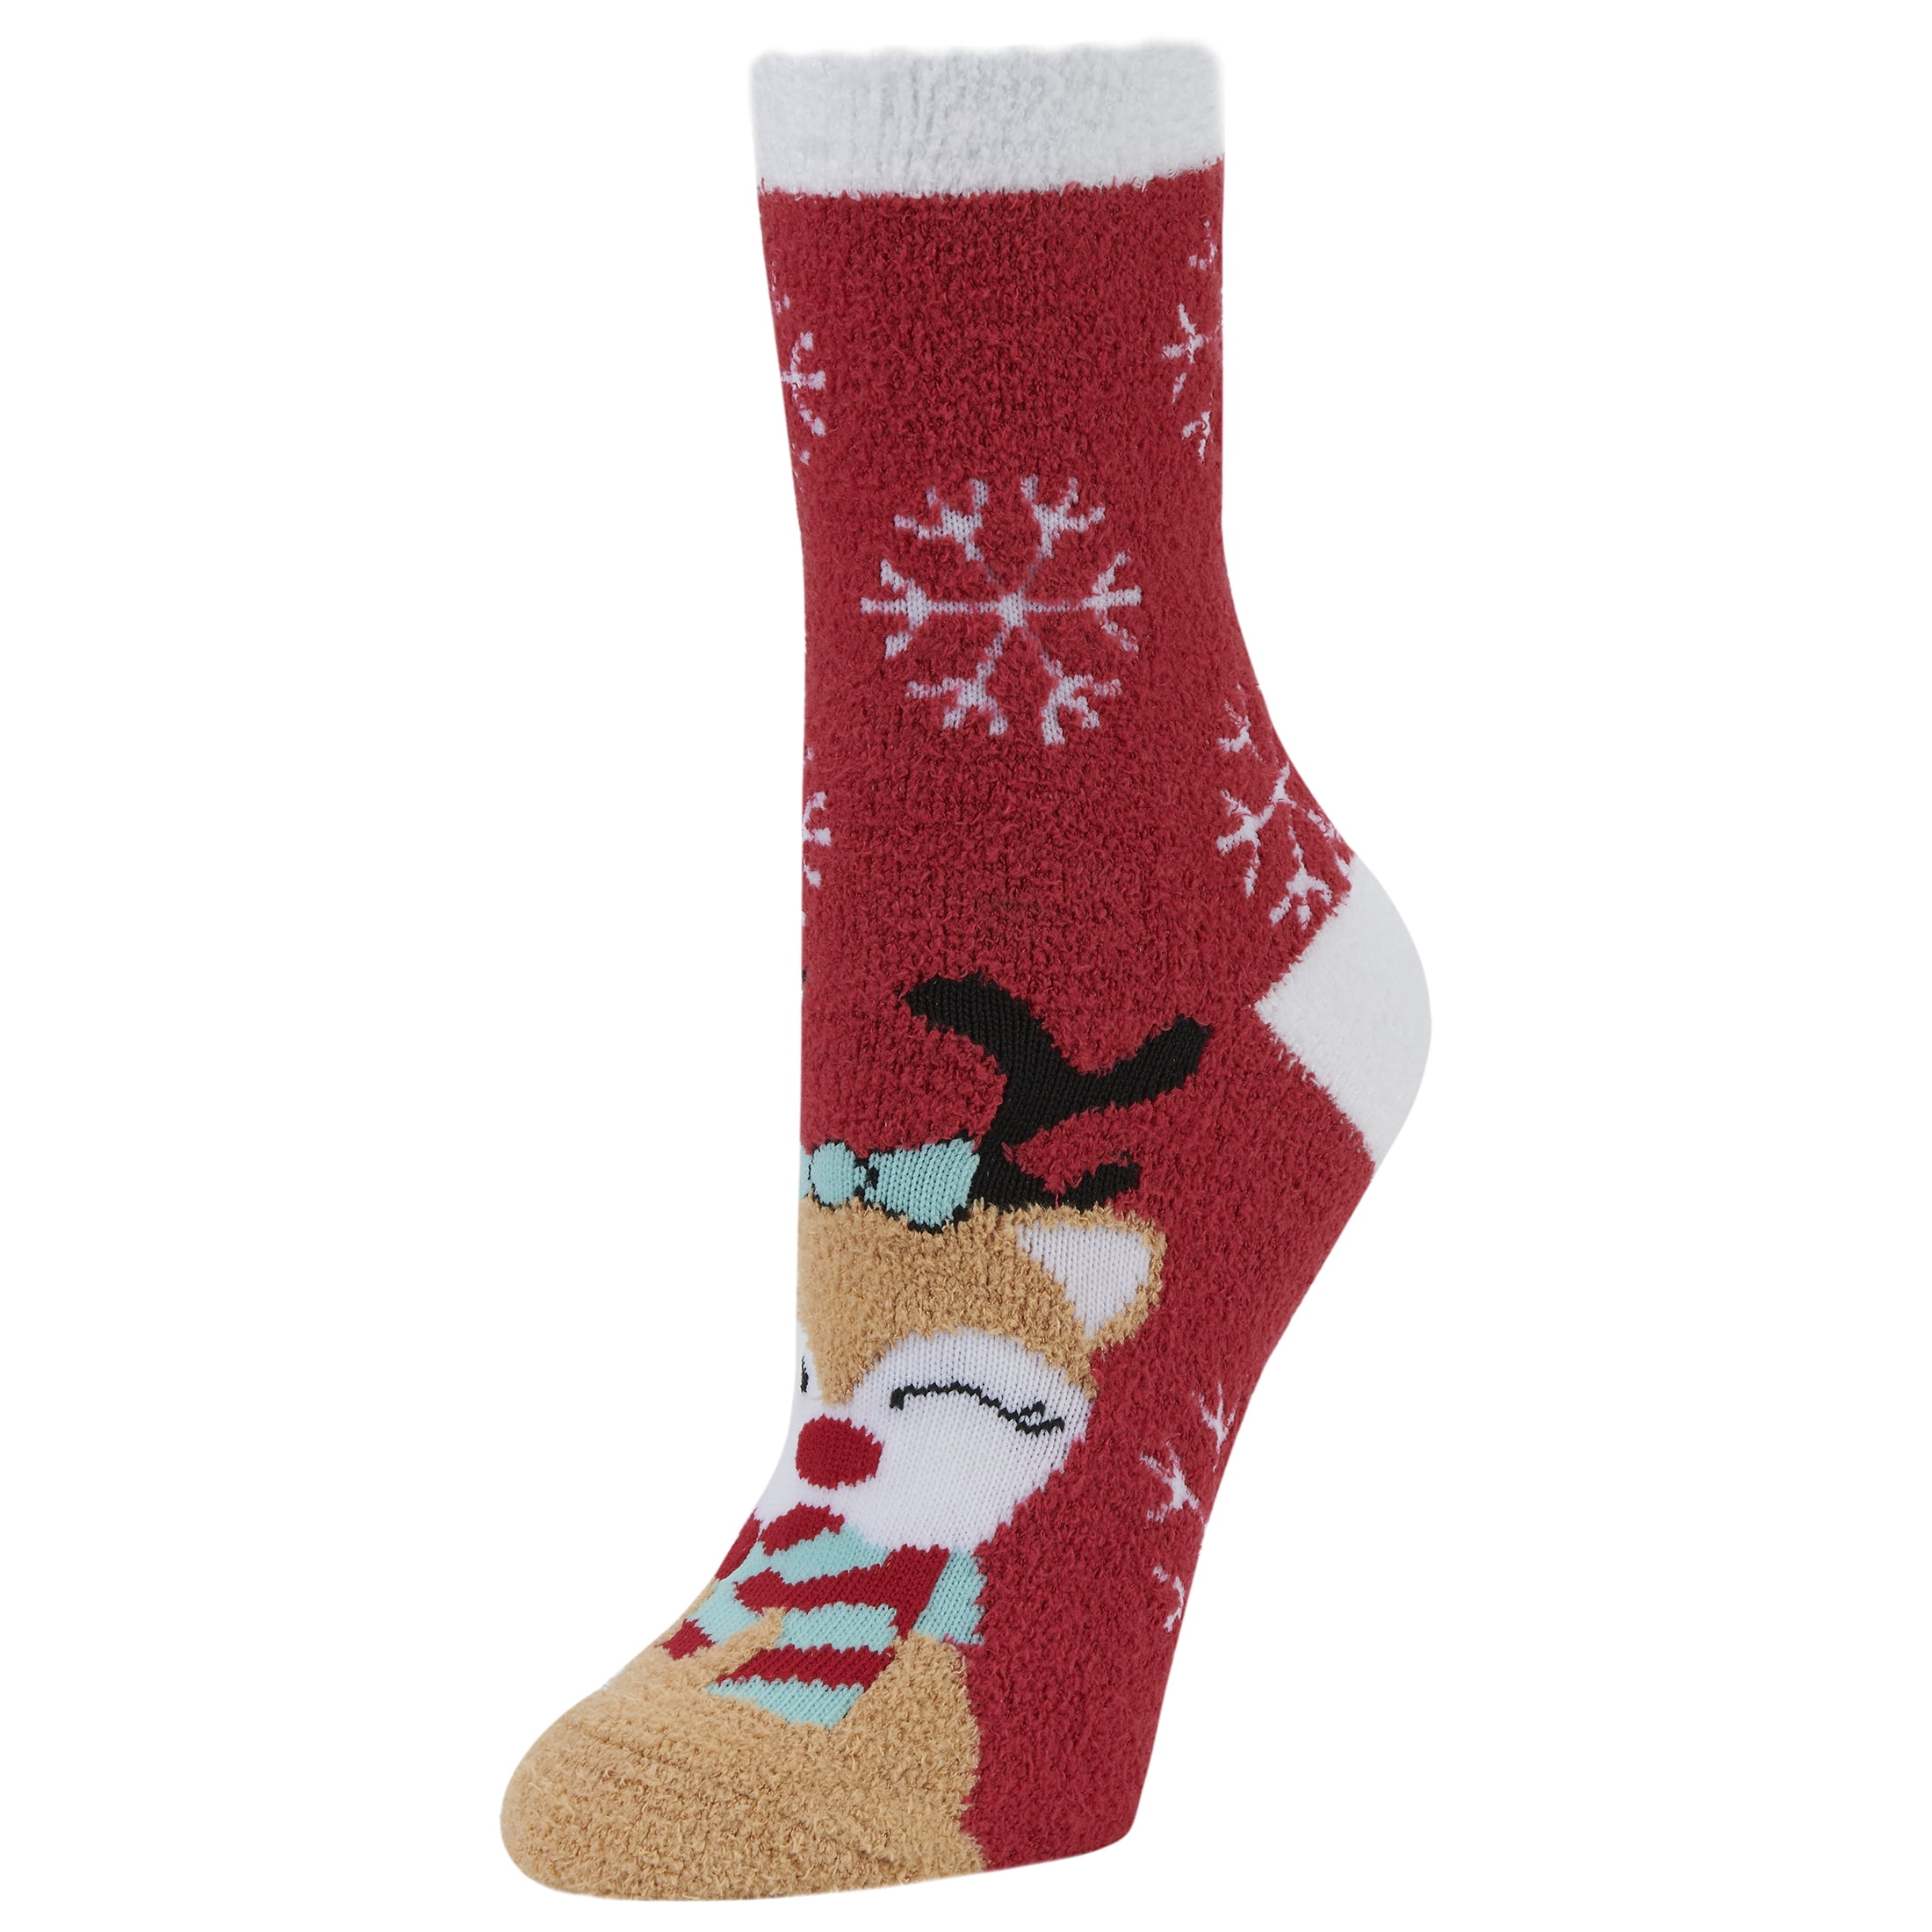 Airplus Holiday Aloe Infused Crew Socks, Red Deer, Women's Medium 1 ...